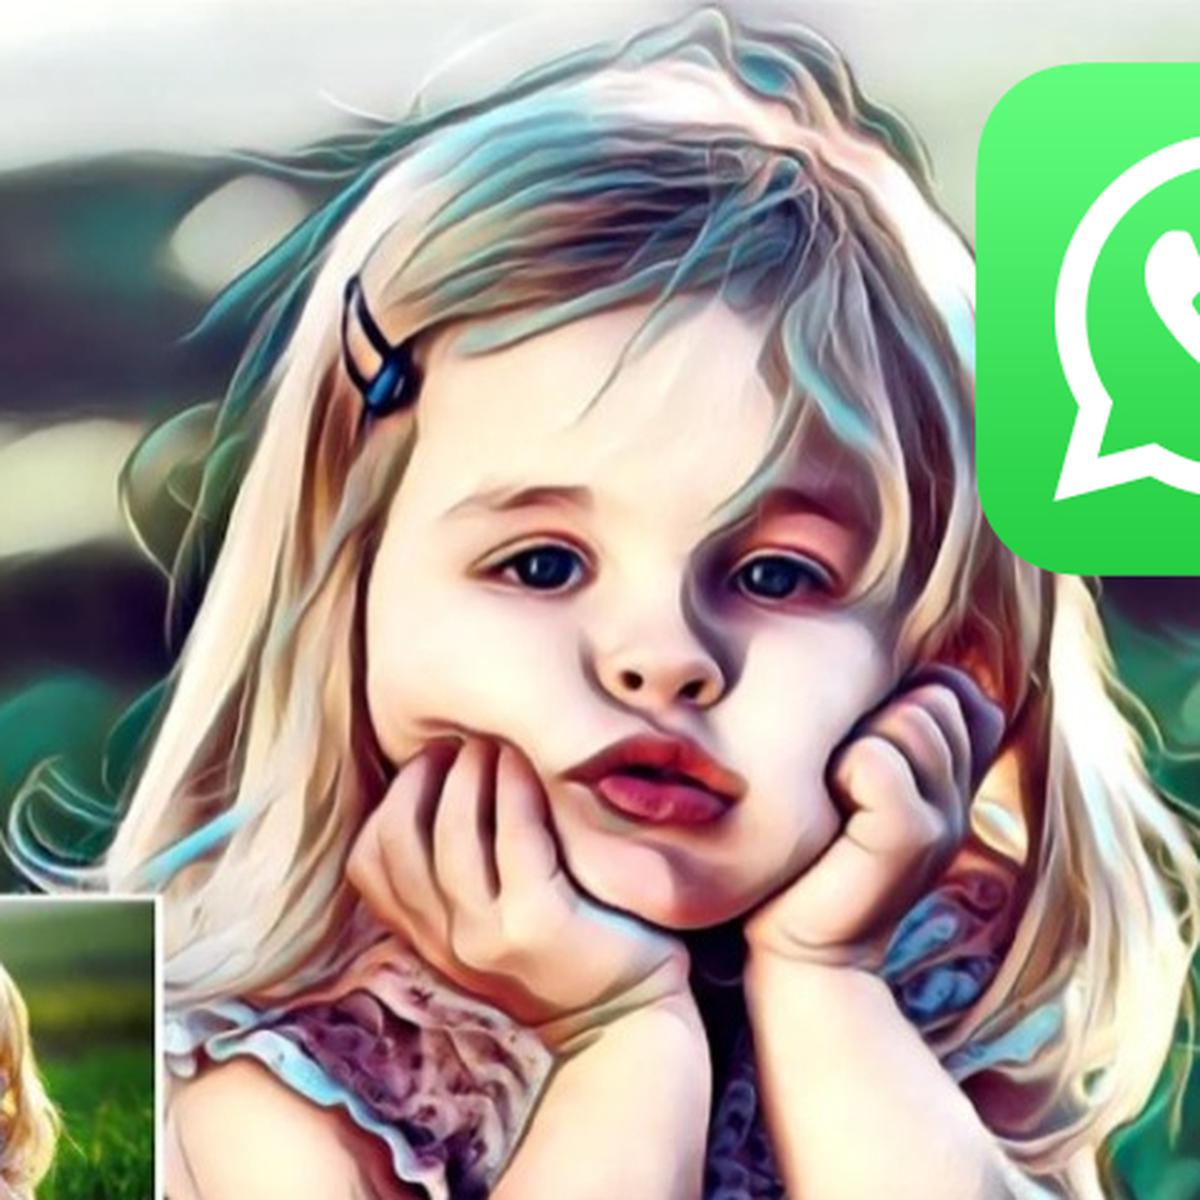 WhatsApp | Cómo convertir cualquier foto en un dibujo y enviarla por la app  | Aplicaciones | Smartphone | Celulares | Tecnología | Imágenes | Dibujos |  nnda | nnni | DATA | MAG.